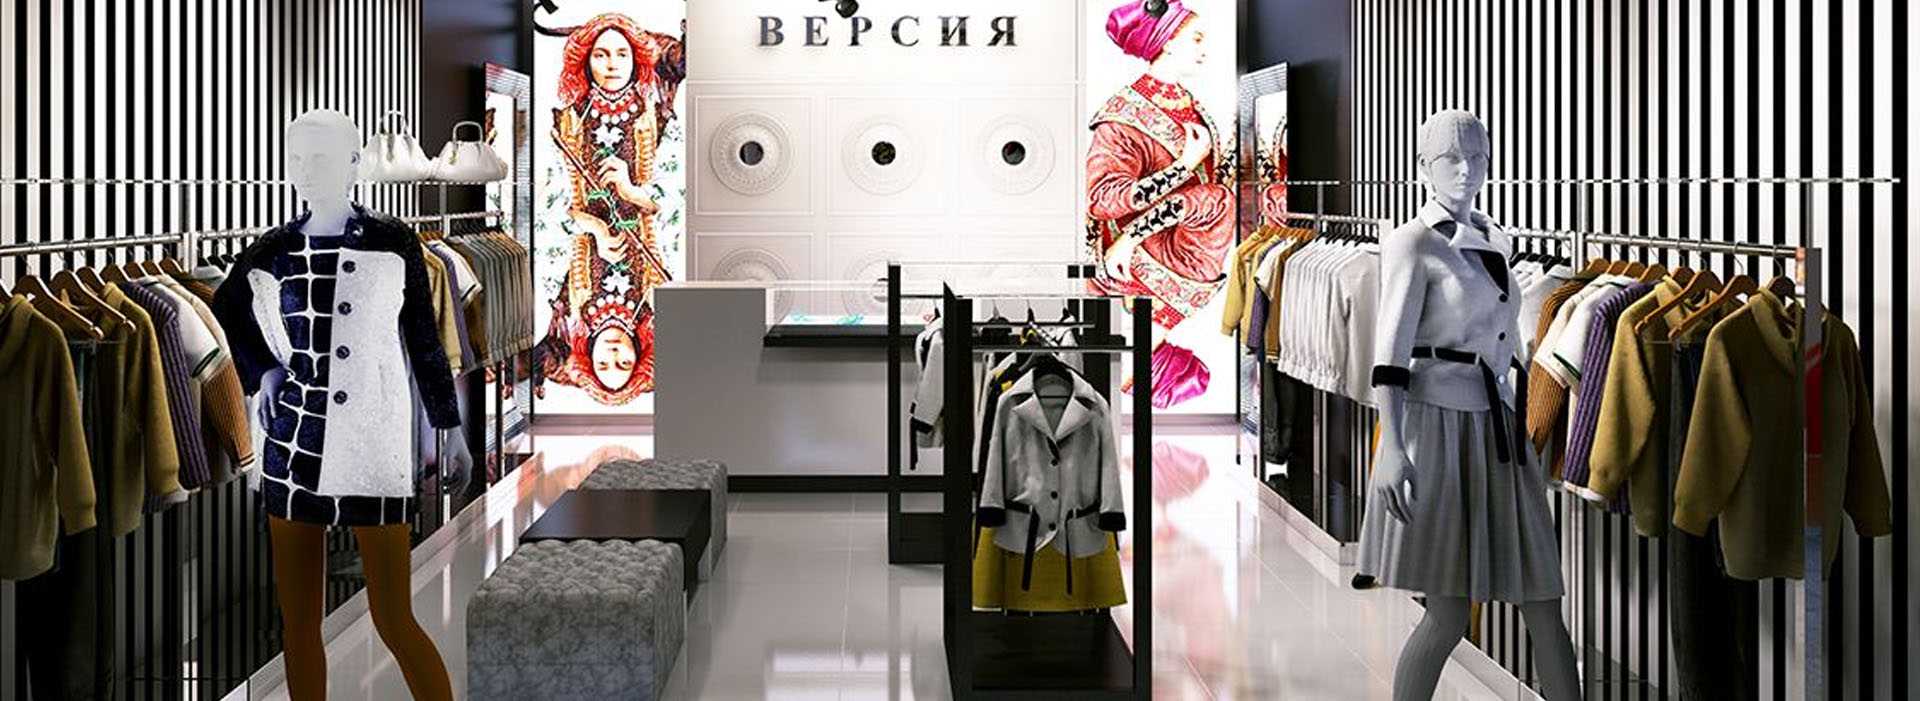 Малоизвестные российские бренды качественной и недорогой женской одежды 👗